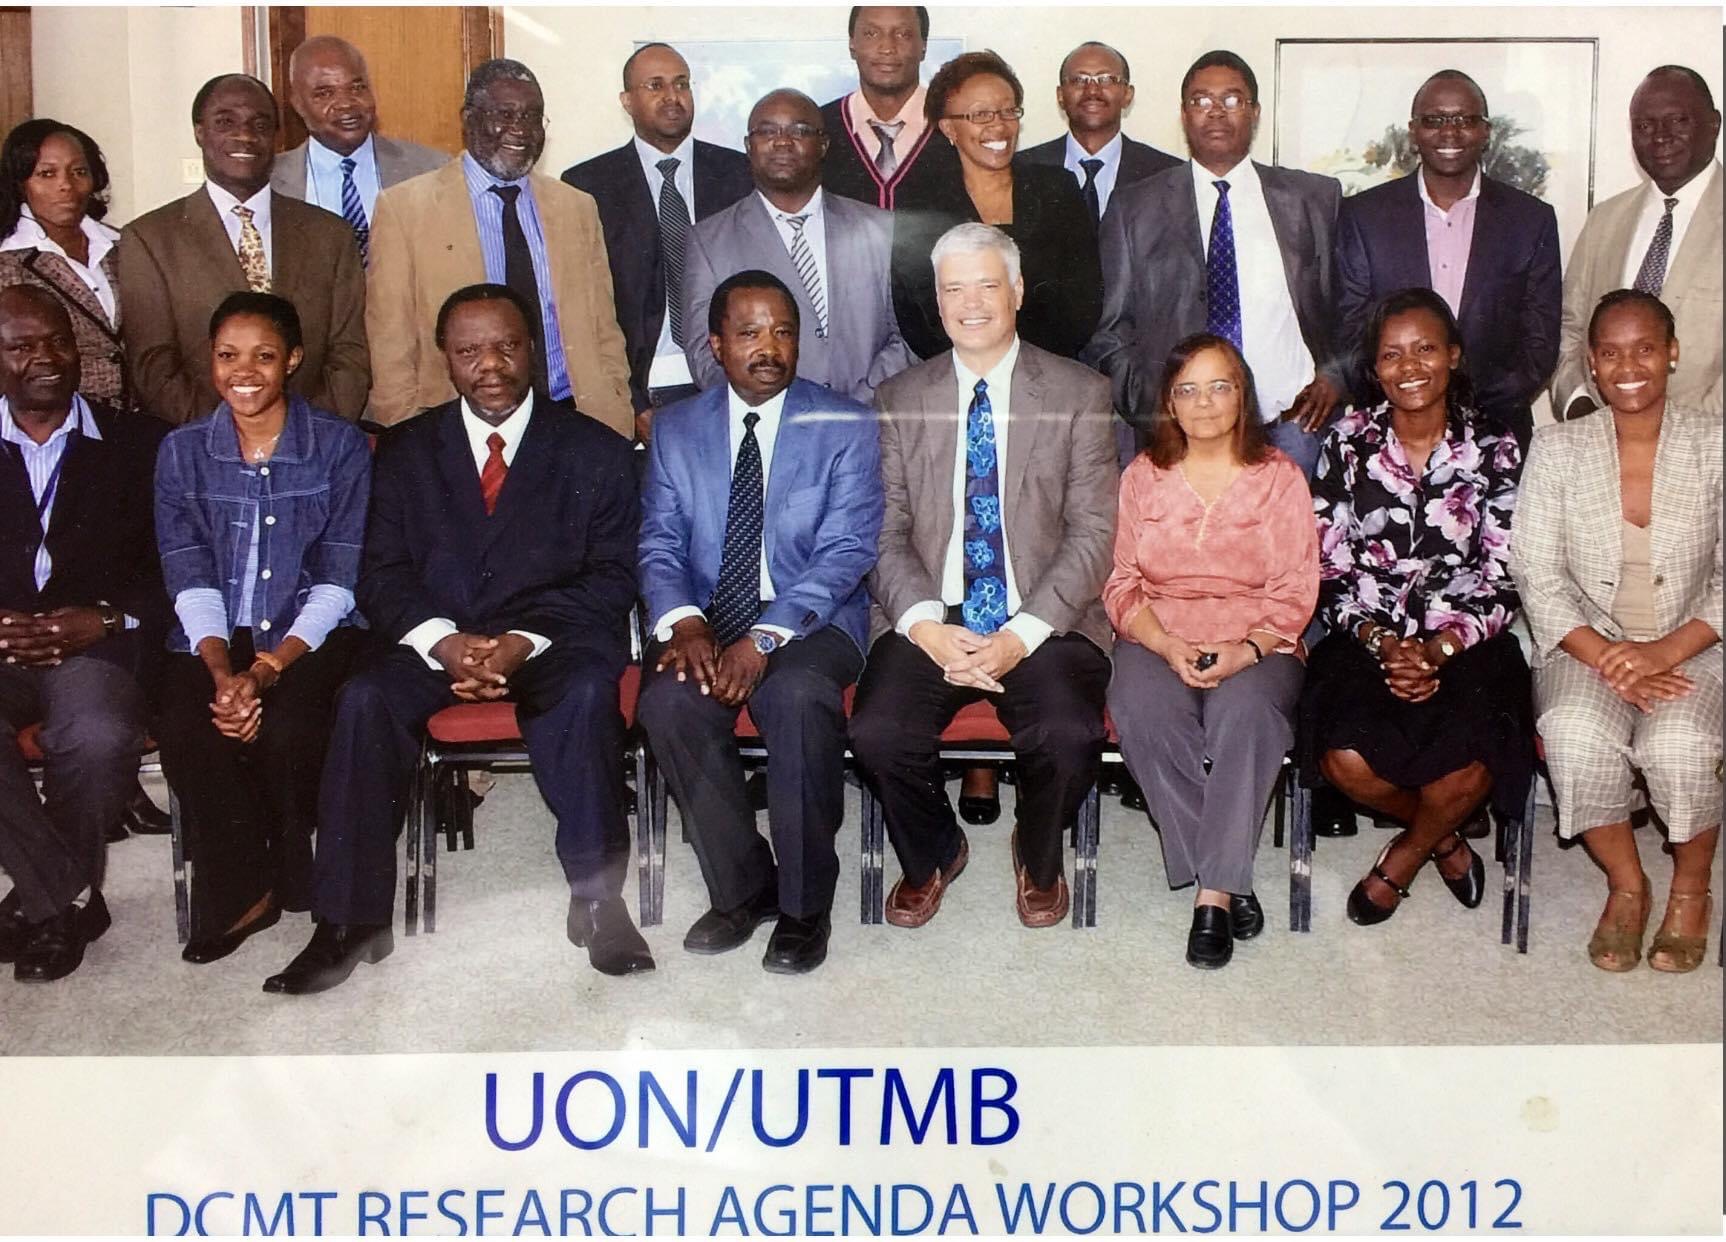 UTMB 2012 Research Workshop